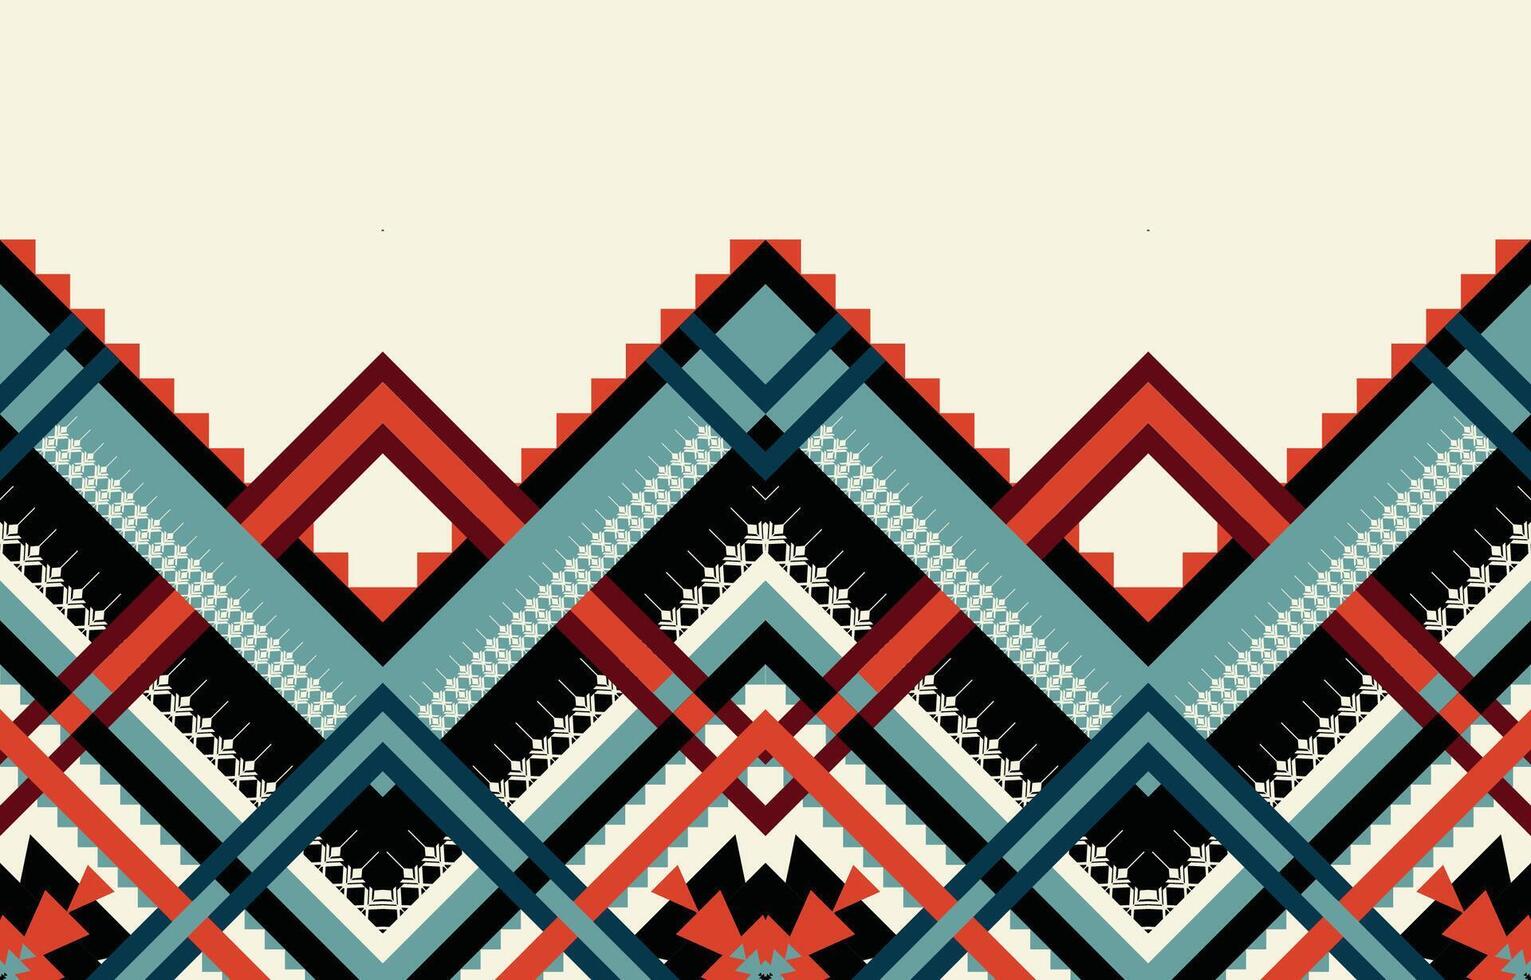 geometrischer ethnischer Mustervektor. afrikanisches, amerikanisches, mexikanisches, westliches aztekisches gestreiftes und böhmisches Muster. entworfen für hintergrund, tapete, druck, teppich, verpackung, fliesen, batik.vektor illustratoin. vektor